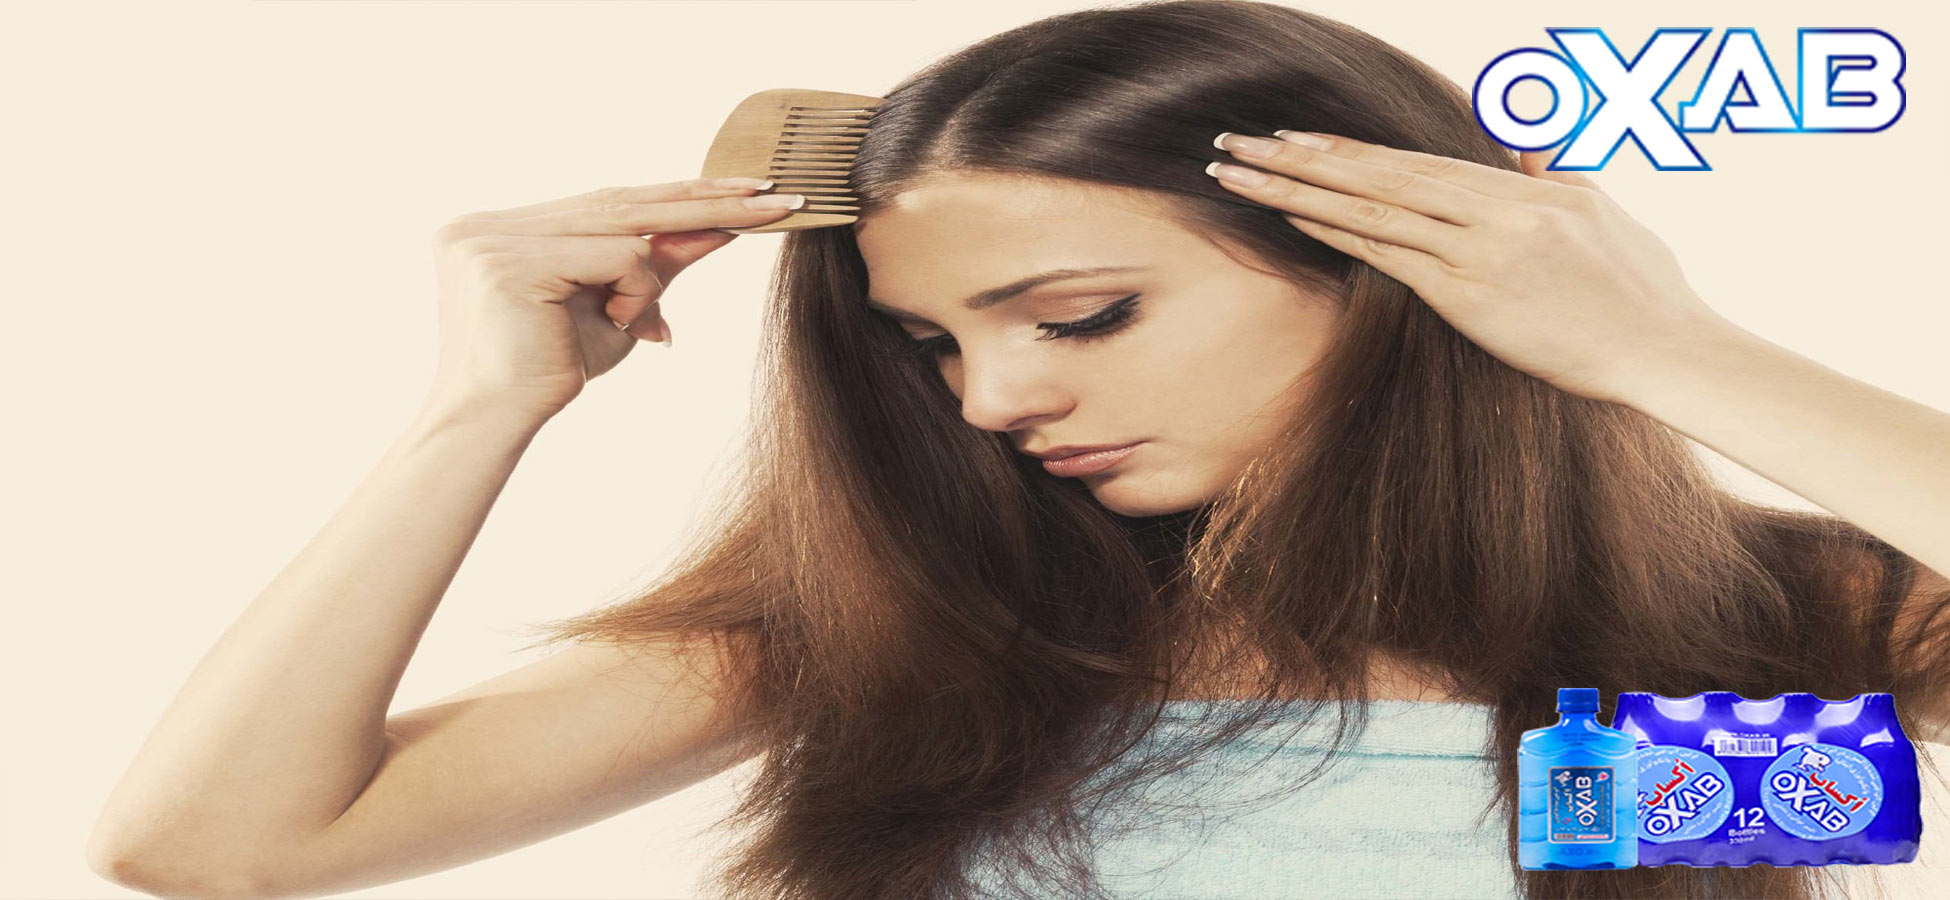 درمان ریزش مو با نوشیدن آب آشامیدنی